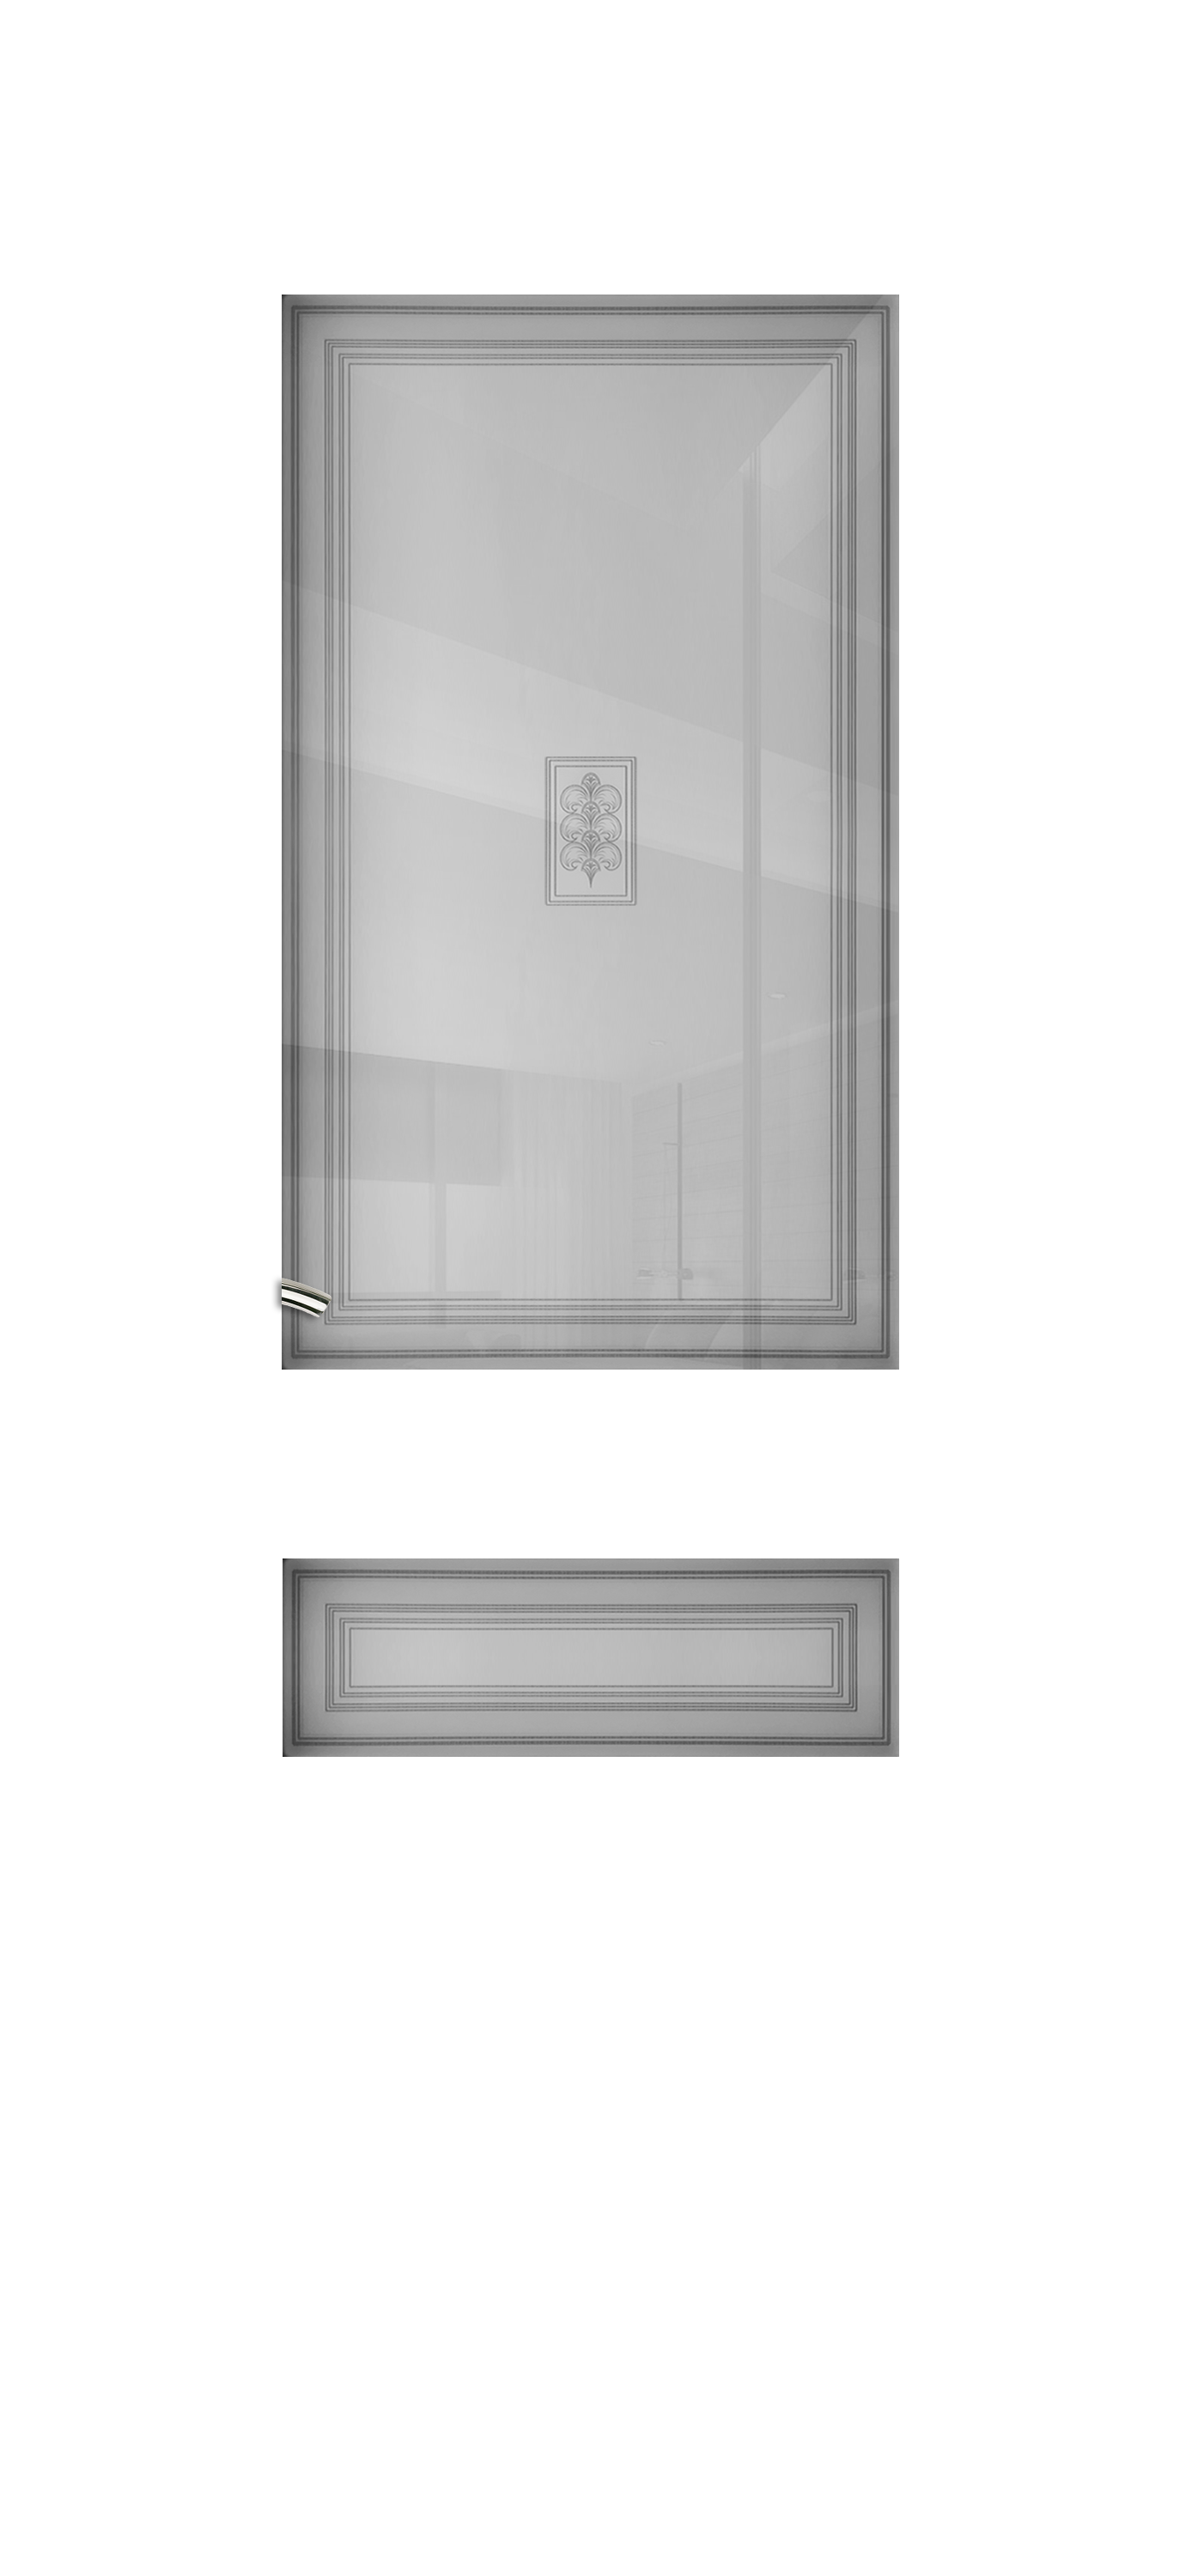 Межкомнатная дверь «Vision 5». Вид отделки Белая эмаль Остекление:  Cтандартный наличник